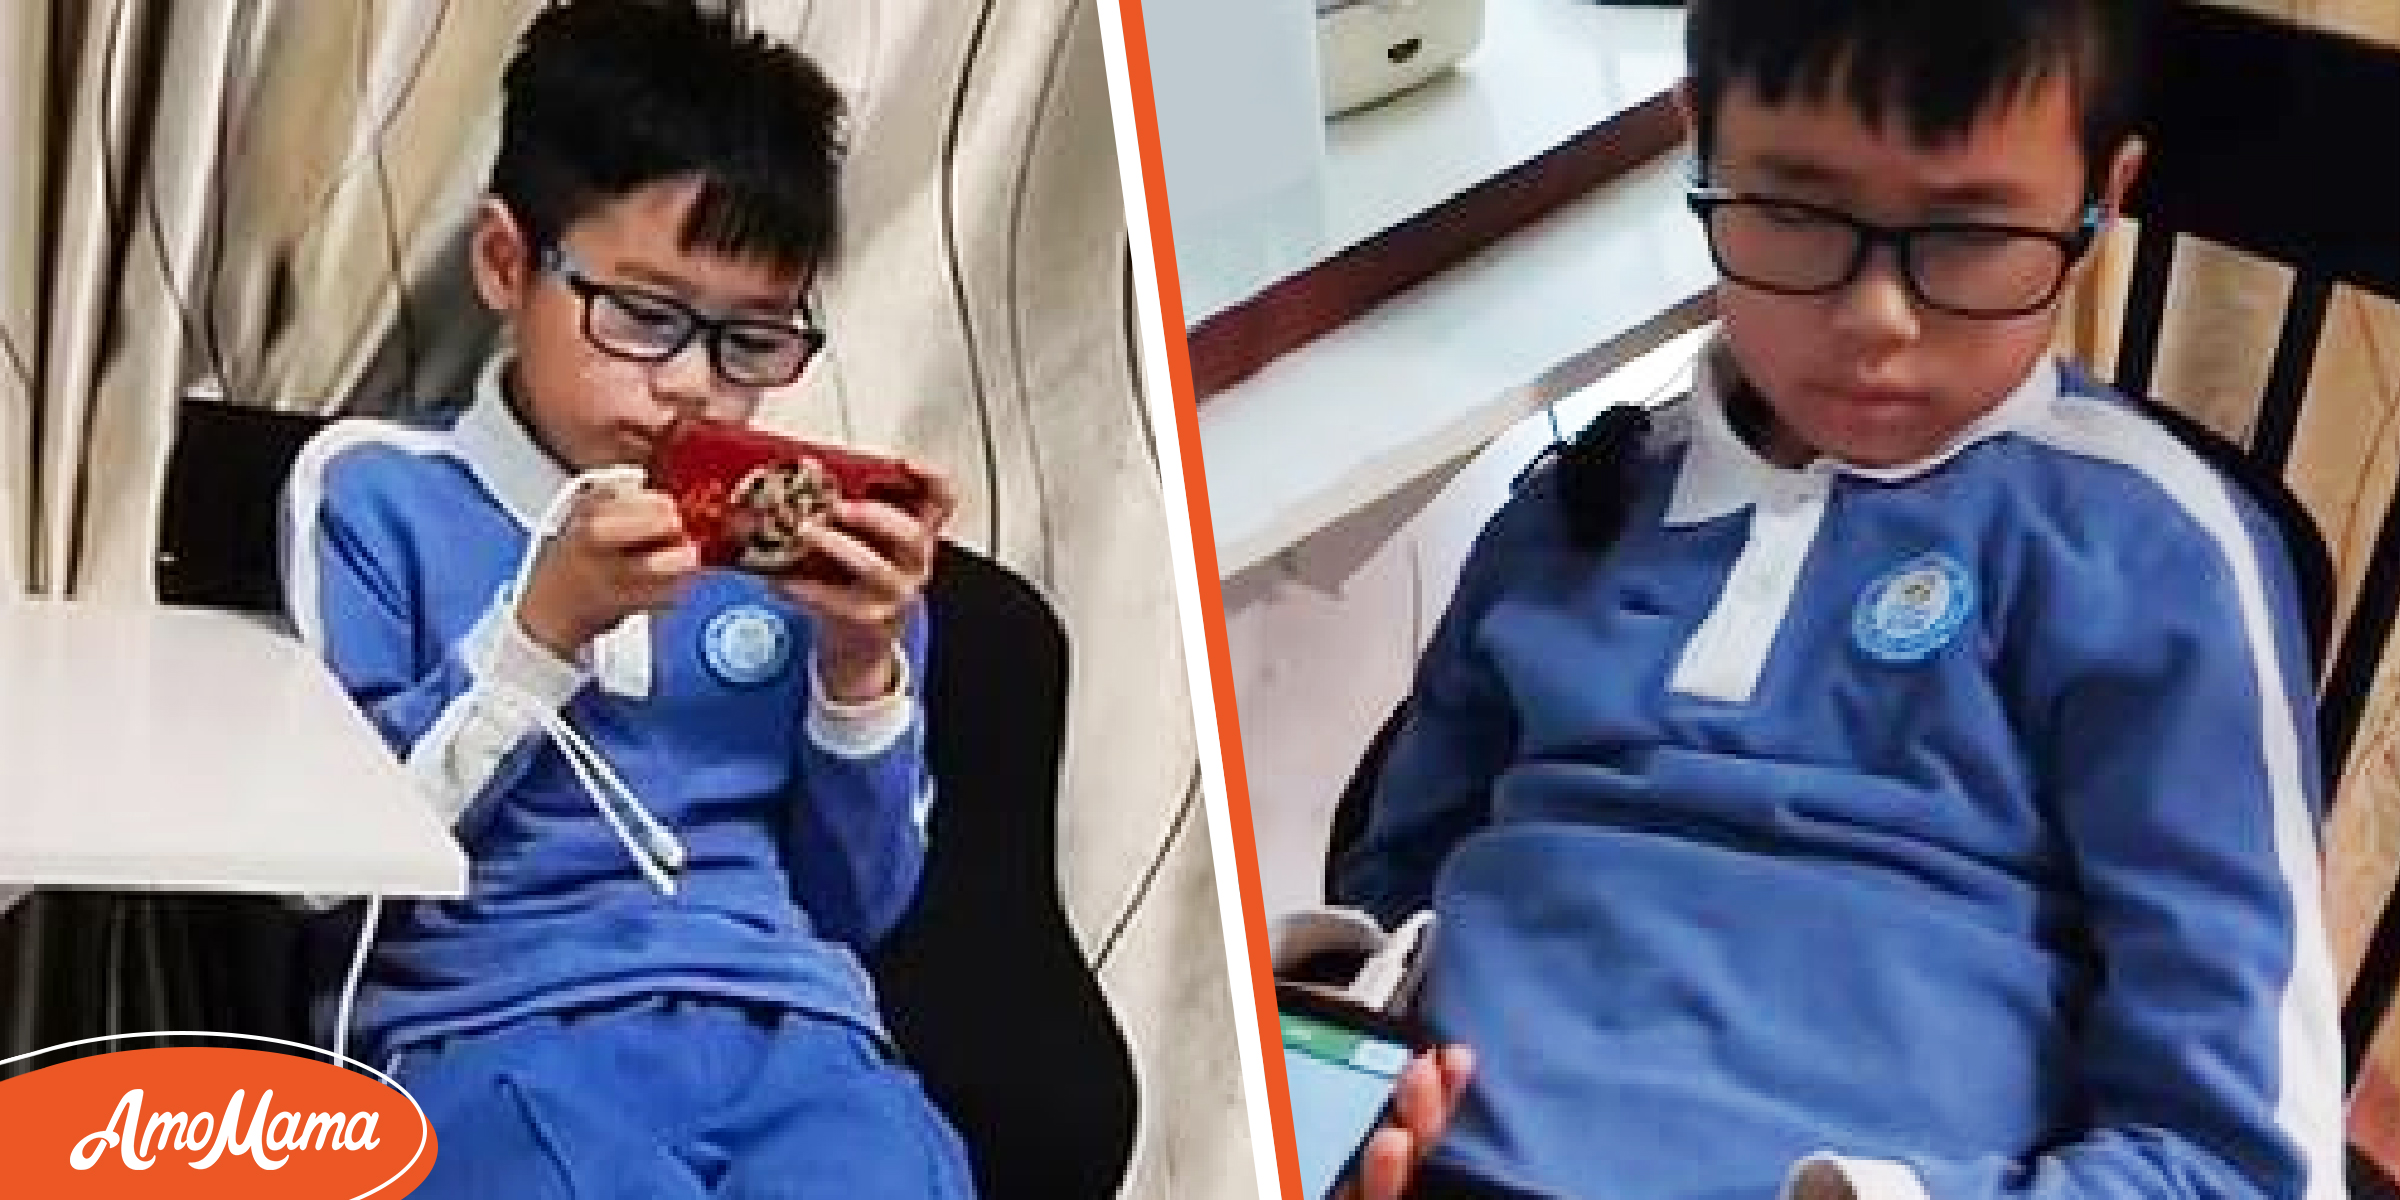 Un père punit son fils de 11 ans en l’obligeant à jouer sur son téléphone pendant 17 heures sans dormir